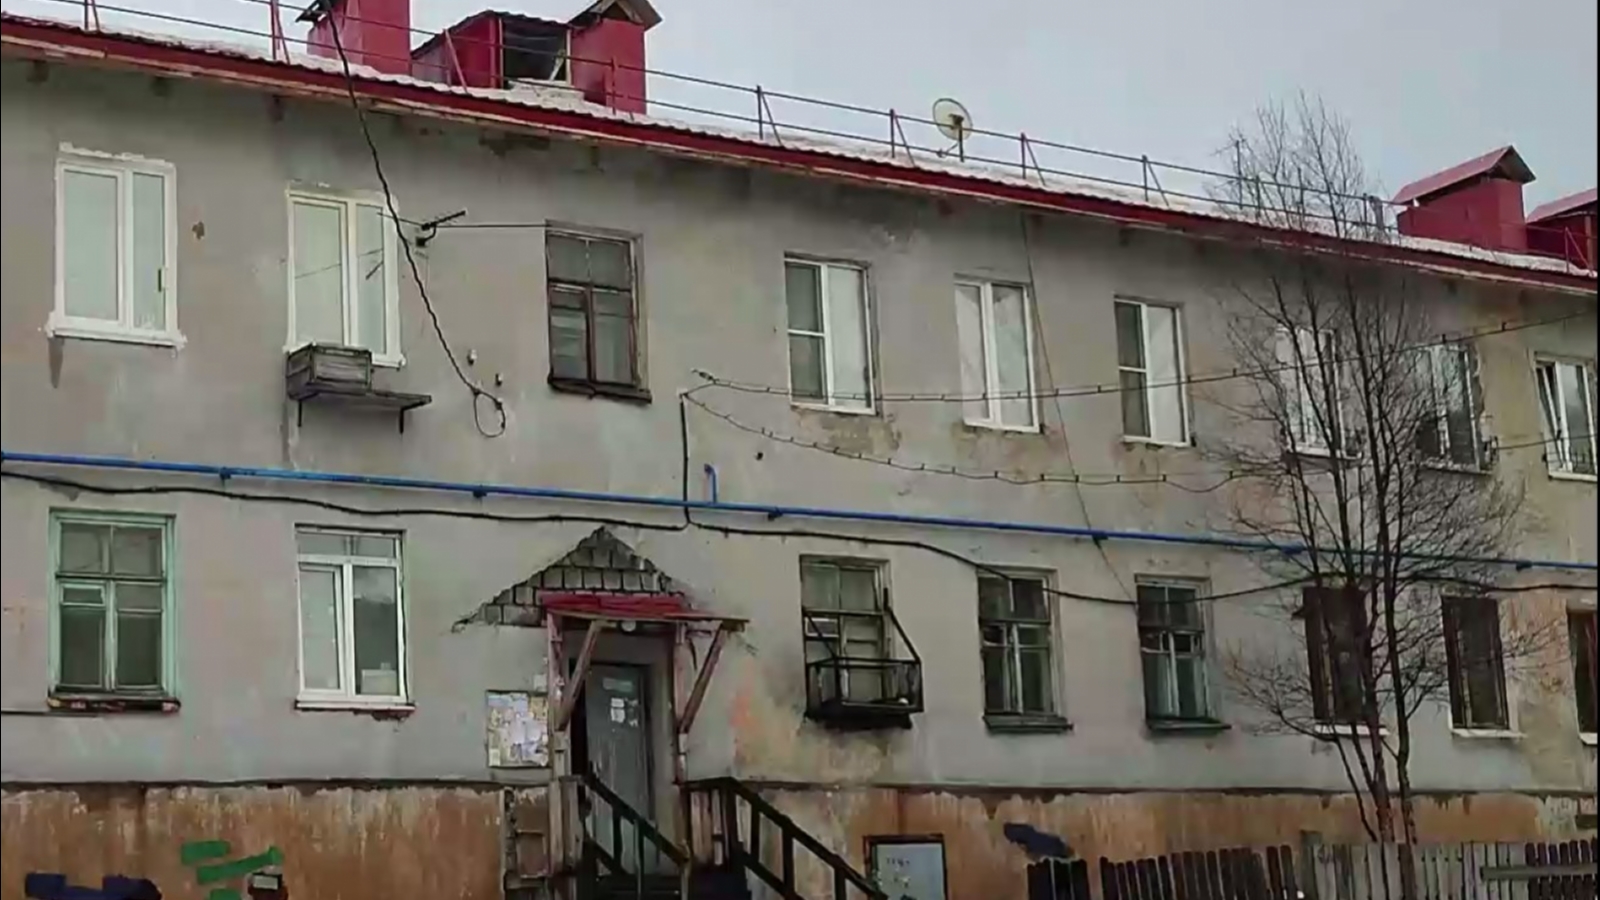 Жители разрушающего дома: Капремонта ждать ещё 17 лет [видео]